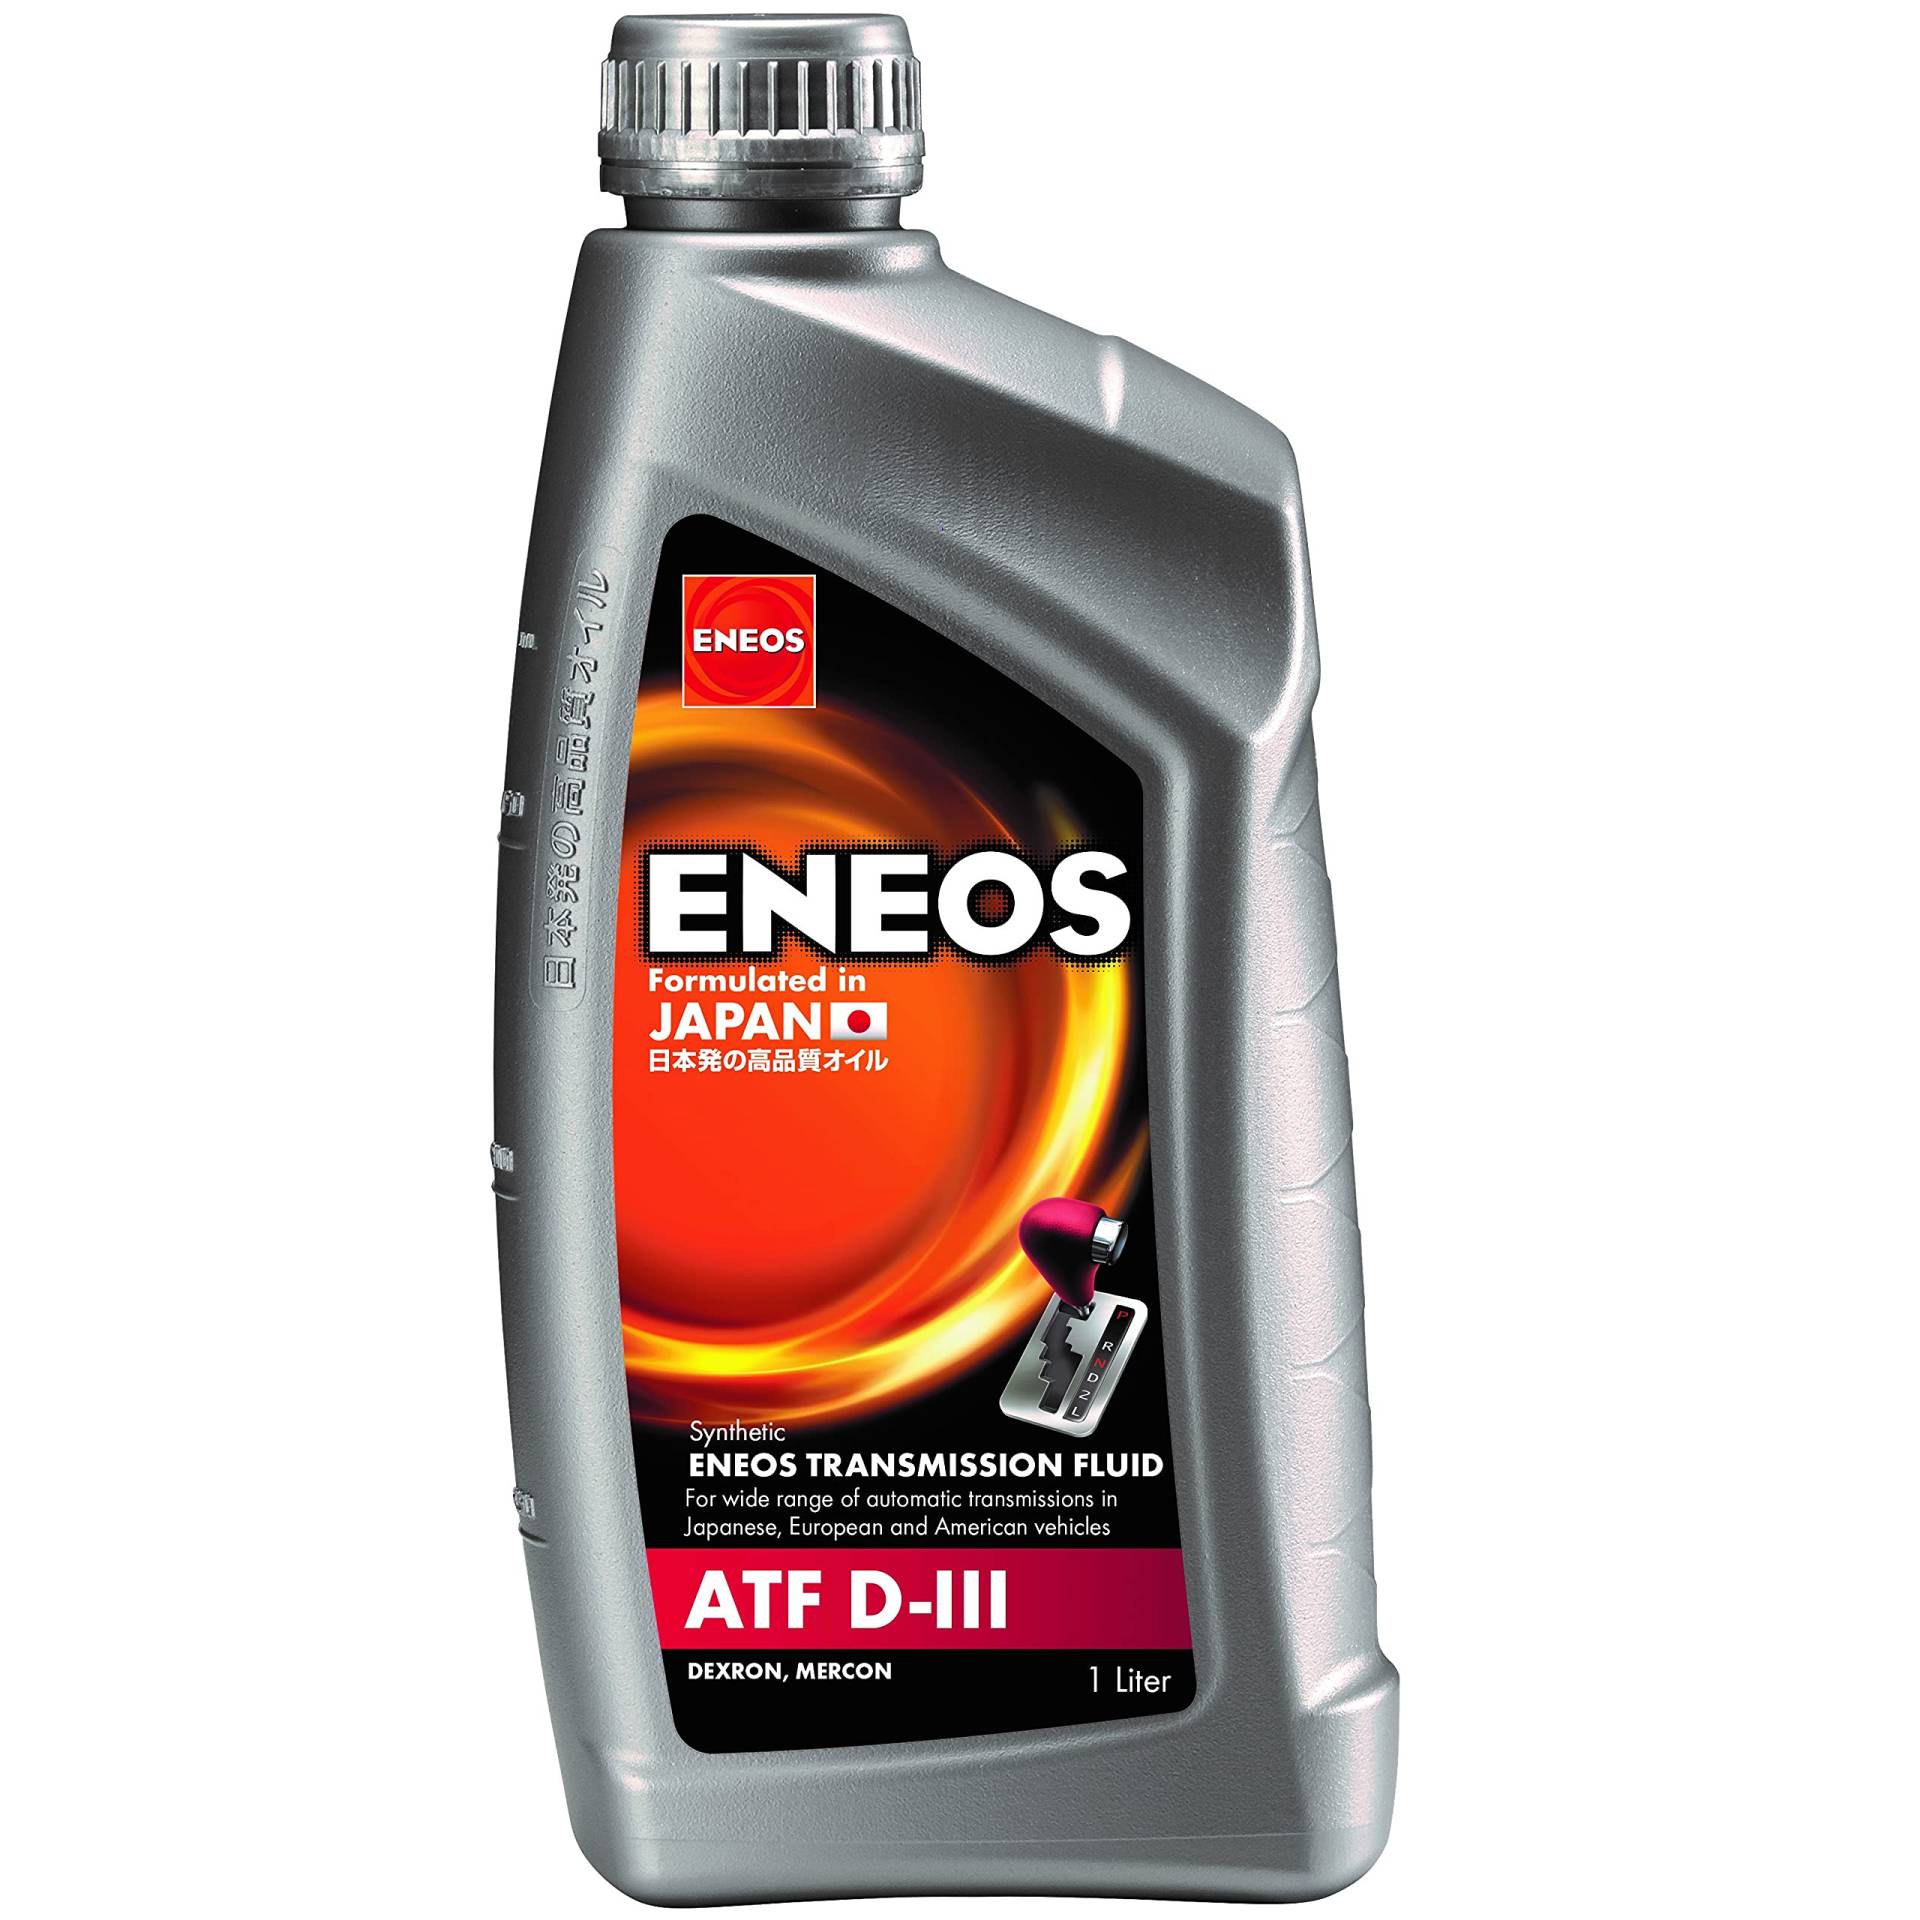 Eneos ATF D-III Automatikgetriebeflüssigkeit, 1 Liter, synthetisches Getriebeöl, geeignet für Servolenkungssysteme und einige Hydrauliksysteme von Eneos